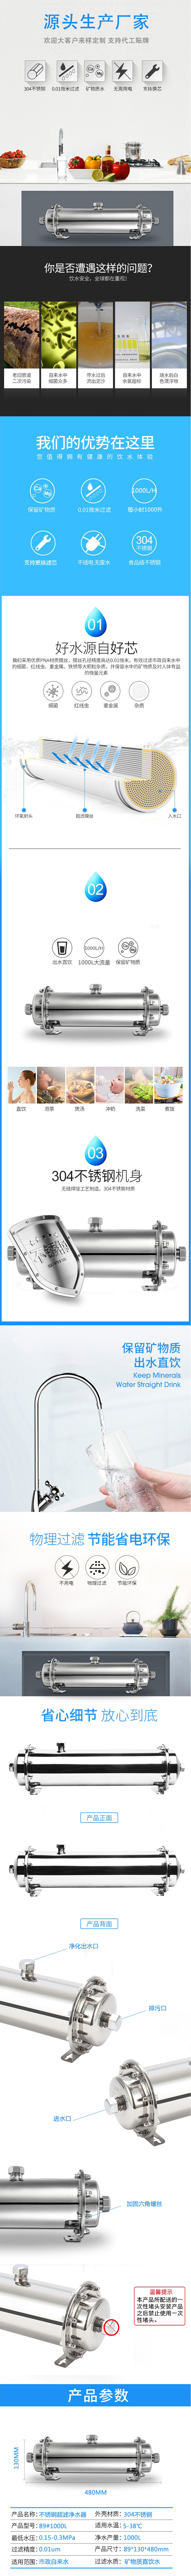 唯纳康-不锈钢净水器//¥1680(图1)